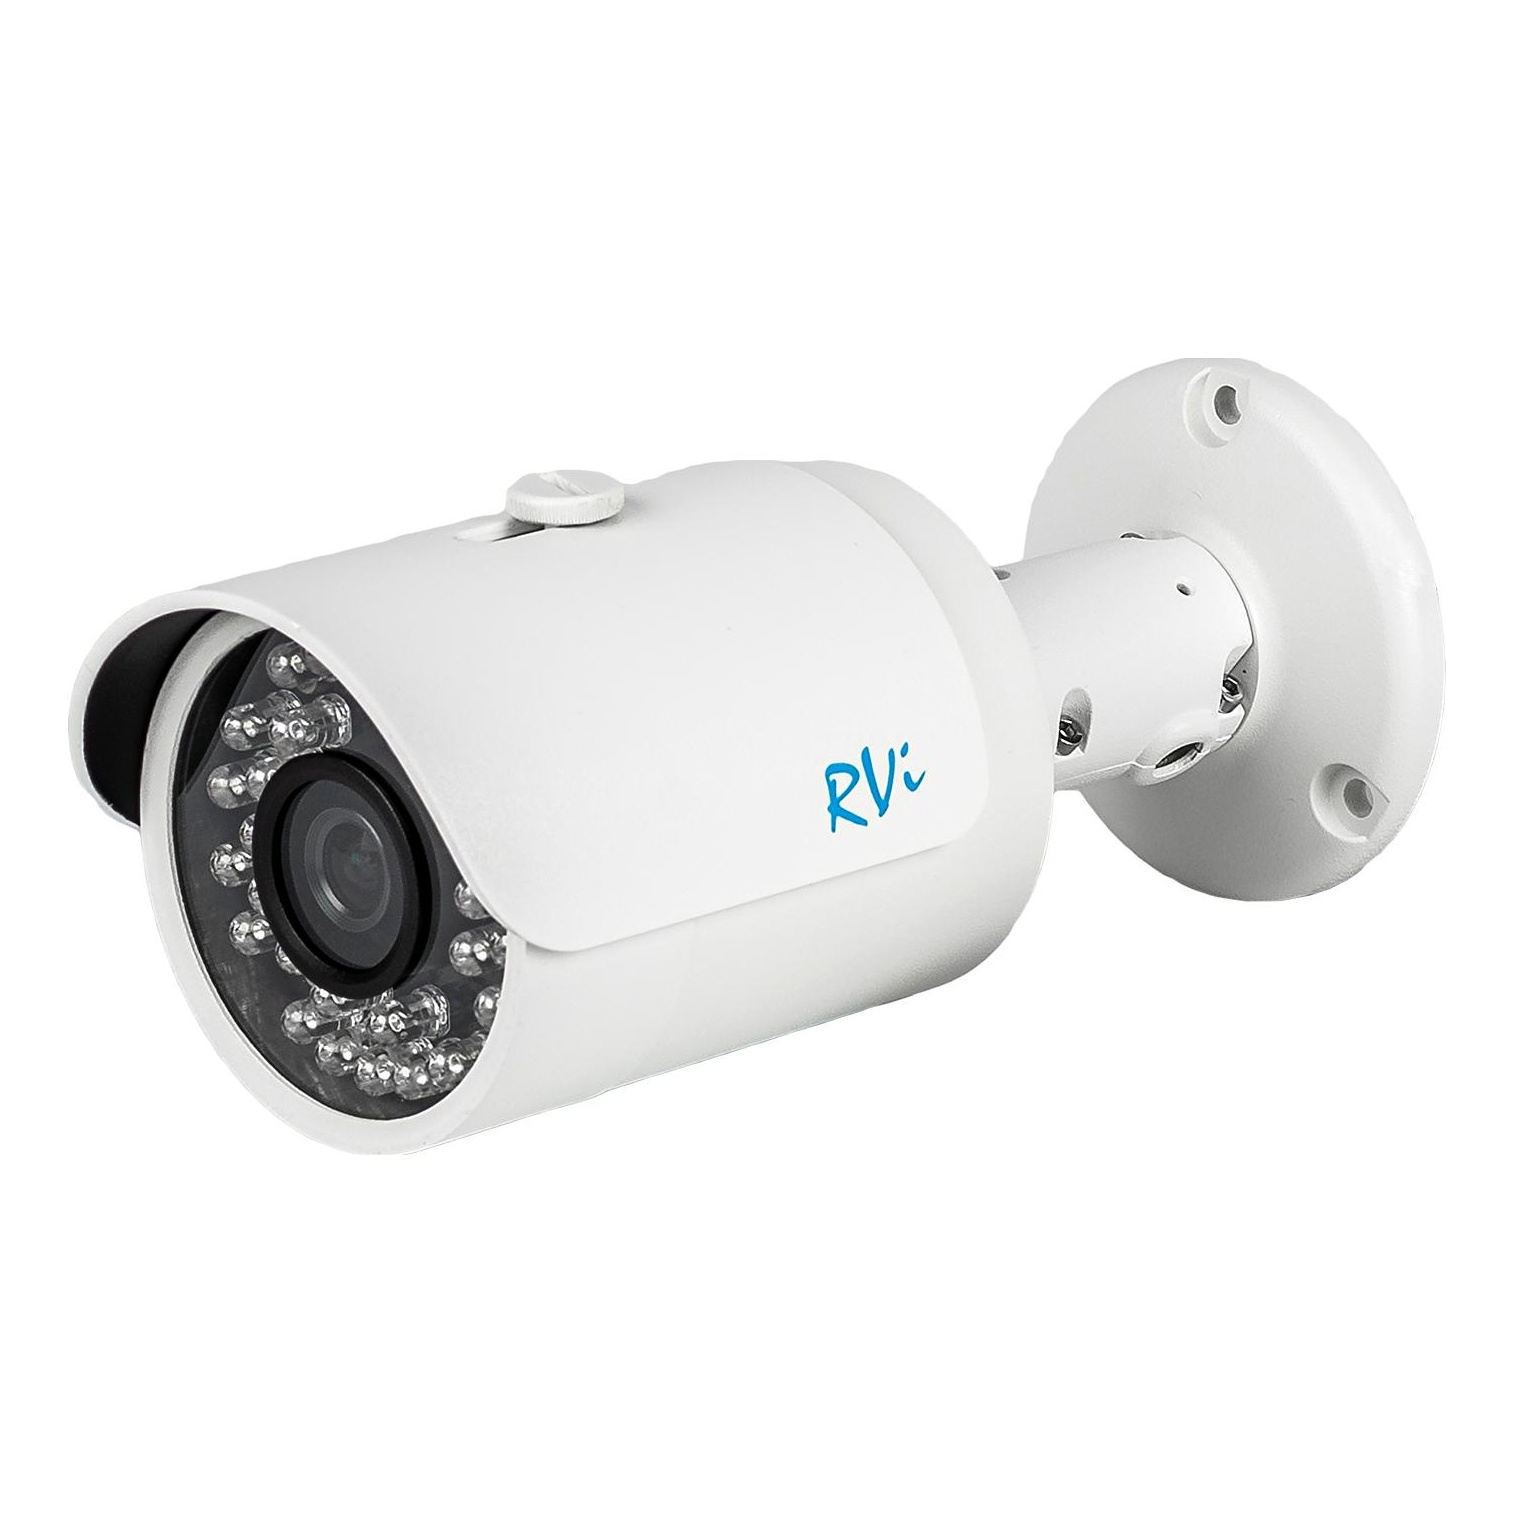 Уличная камера с выводом на телефон. RVI-1nct4030 (2.8). Видеокамера RVI-IPC 42s (3.6мм). Камера RVI-1nct4030 (2.8). Видеокамера RVI-hdc421 (2.8).